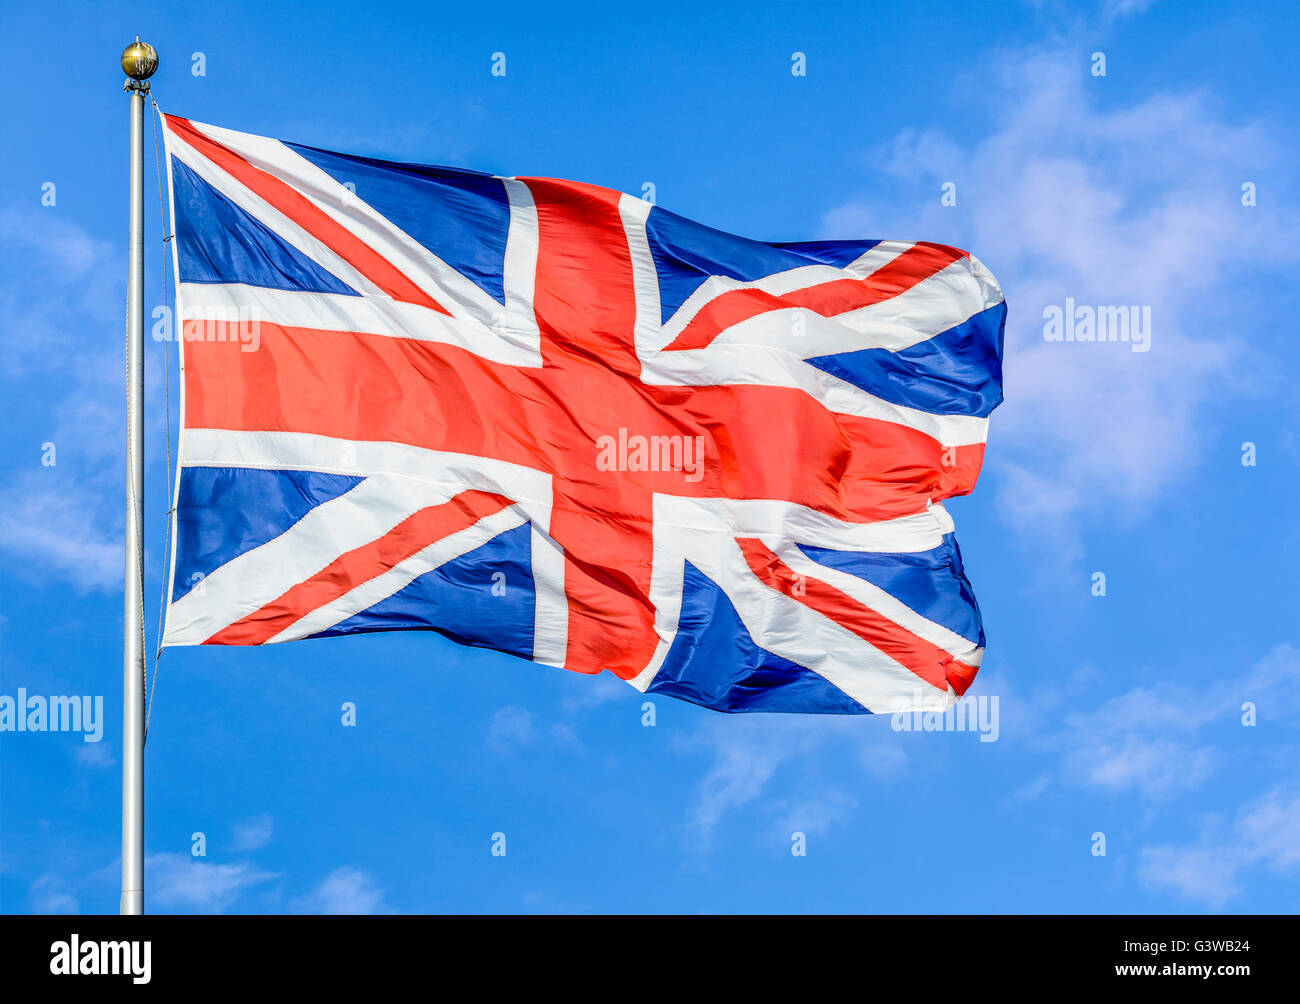 Union Jack bandera del Reino Unido de Gran Bretaña e Irlanda del Norte, volando sobre un poste contra el cielo azul. Foto de stock